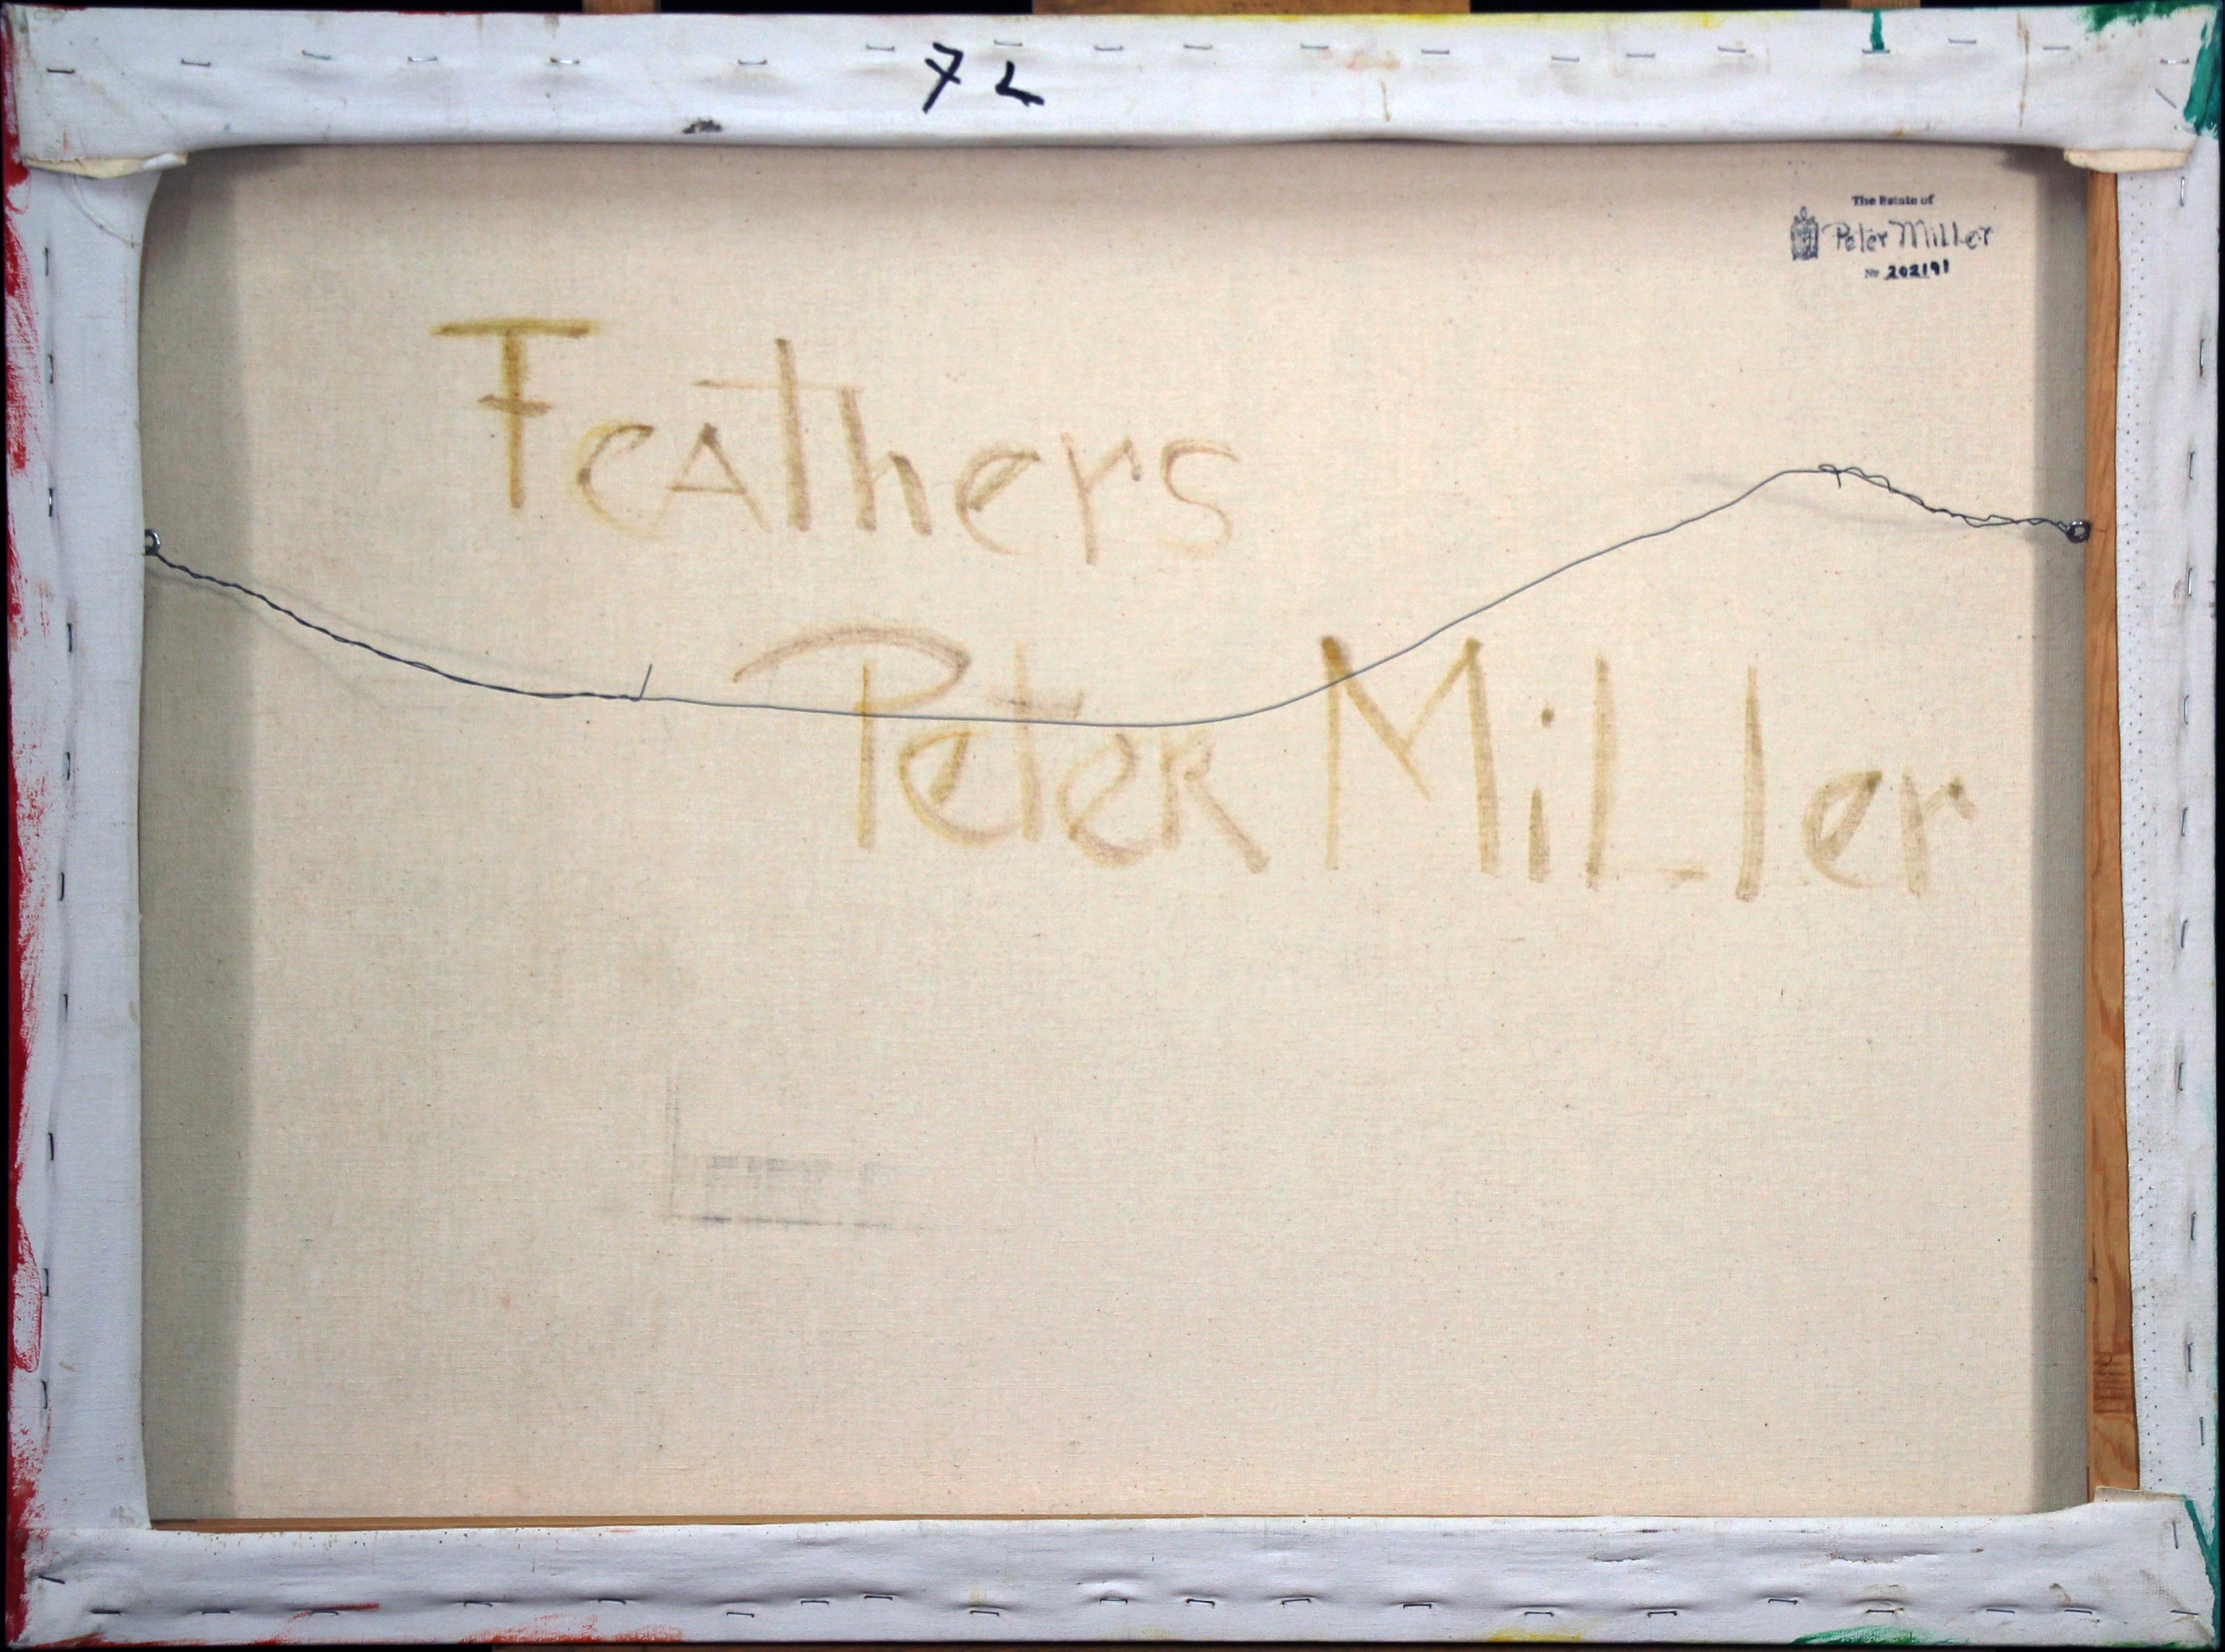 Feathers, Commentaire mystique et spirituel du moderniste féminin - Modernisme américain Painting par Peter Miller